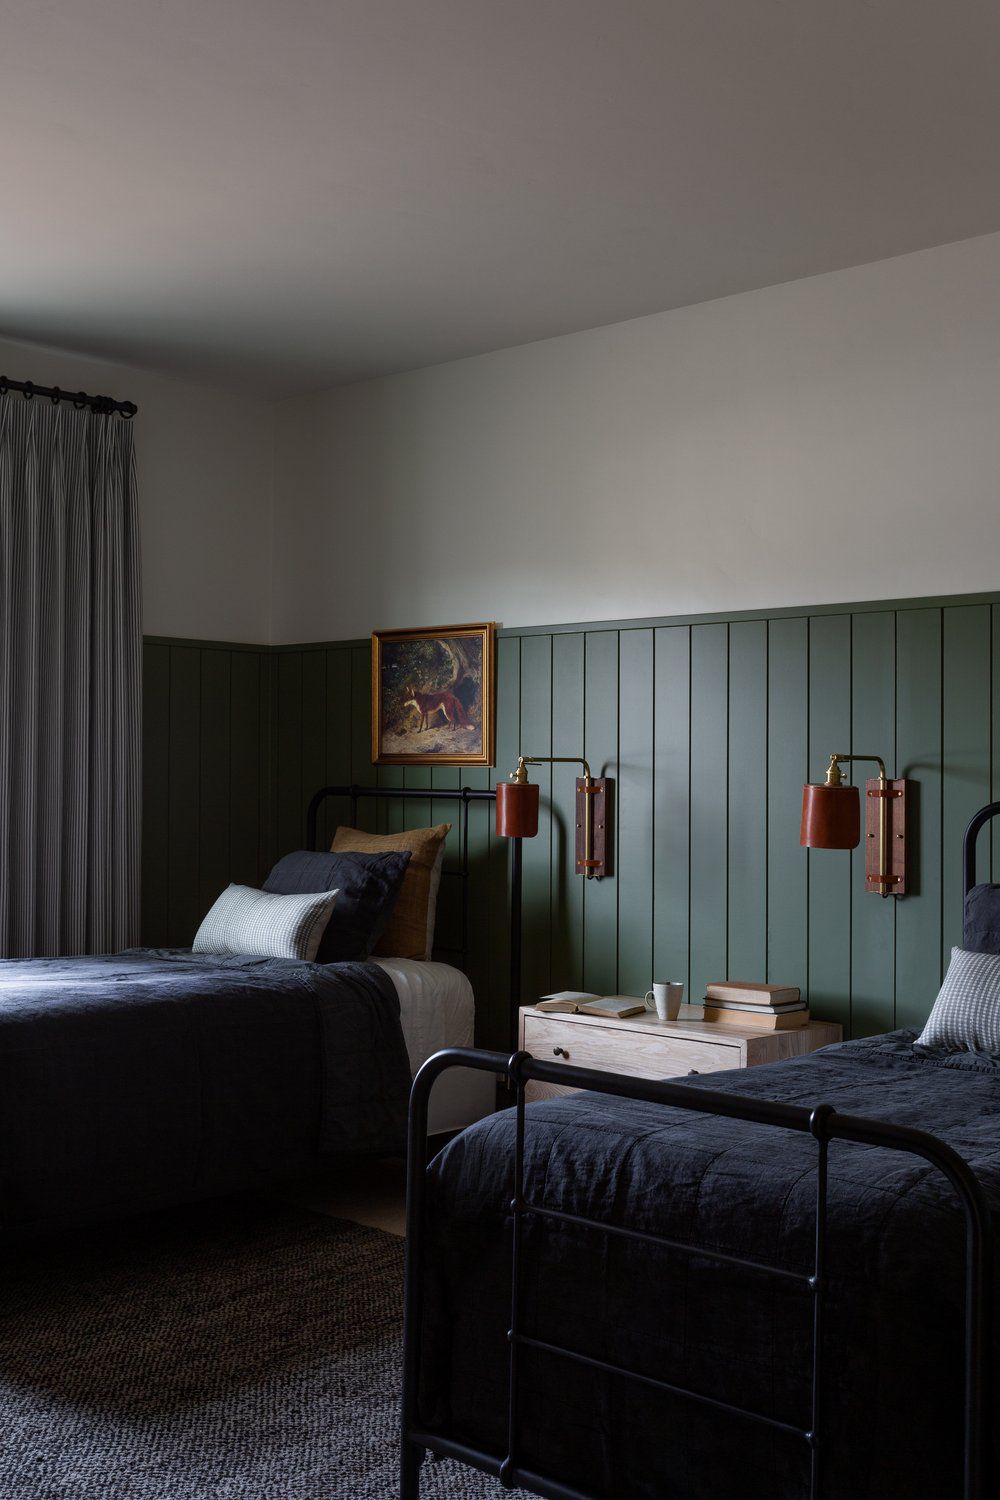 Revestimiento de pared verde oscuro en un dormitorio con dos camas individuales